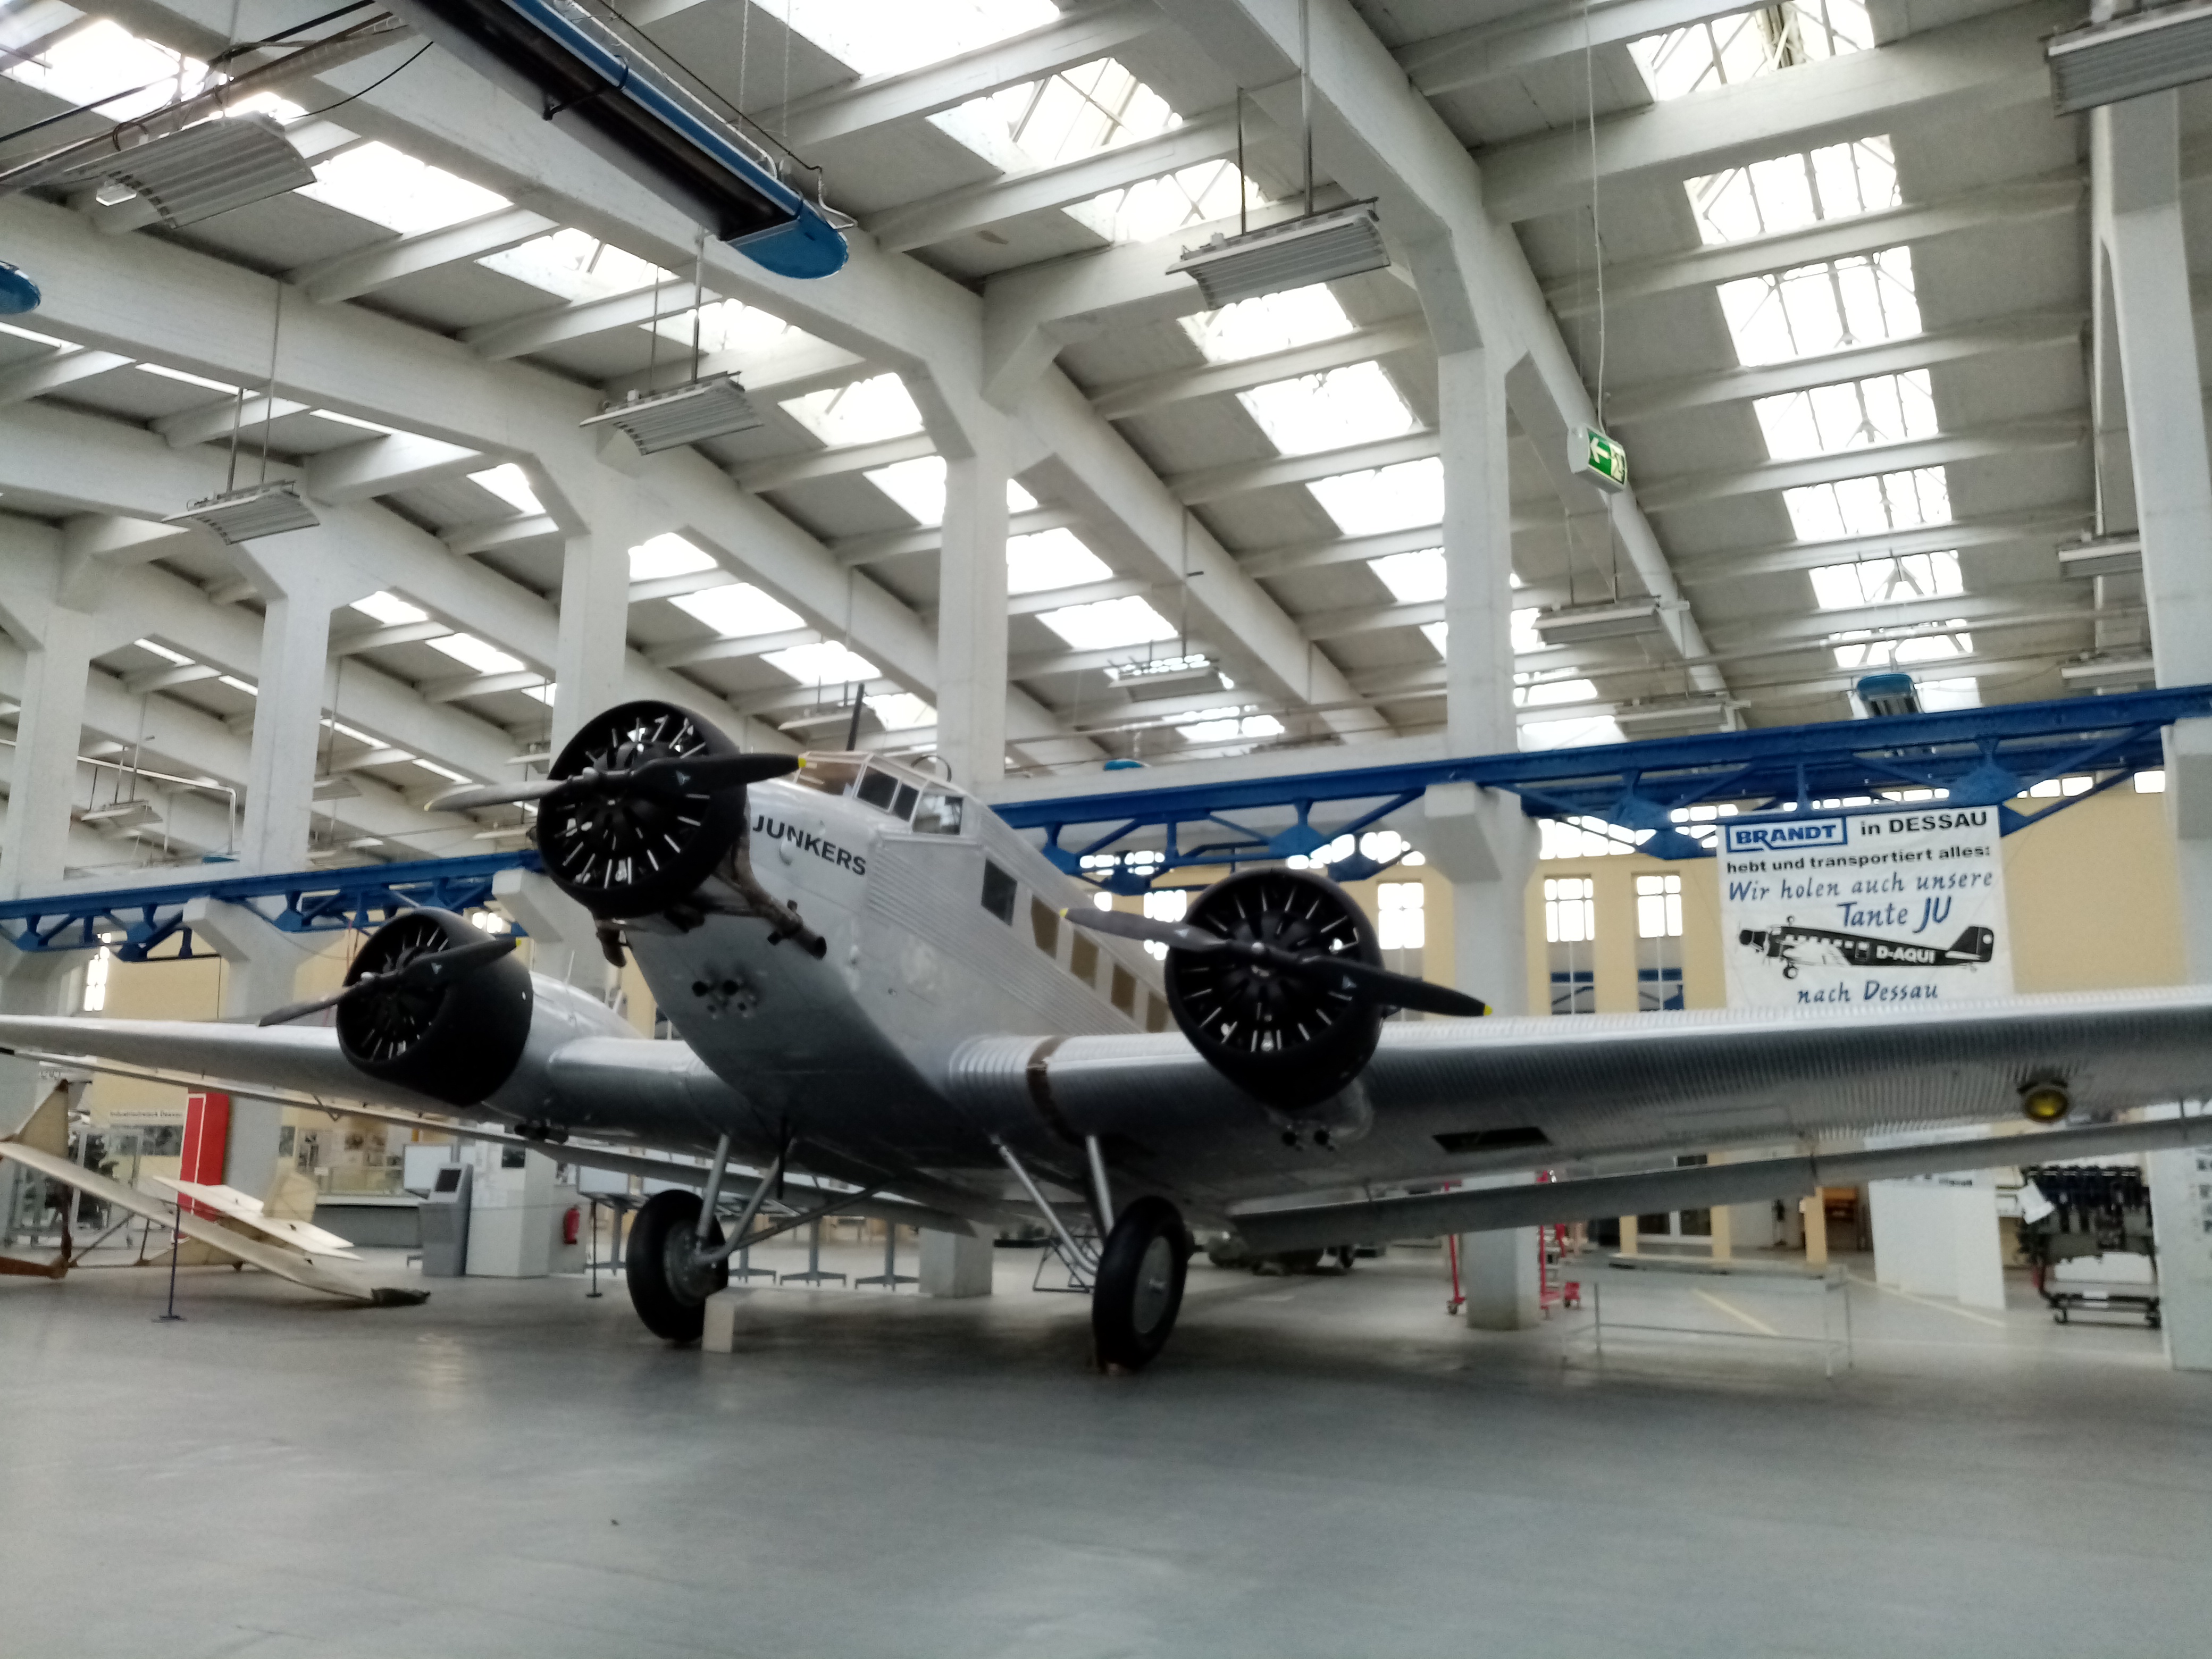 Ein Flugzeug mit der Aufschrift "Junkers" steht in einer großen Halle